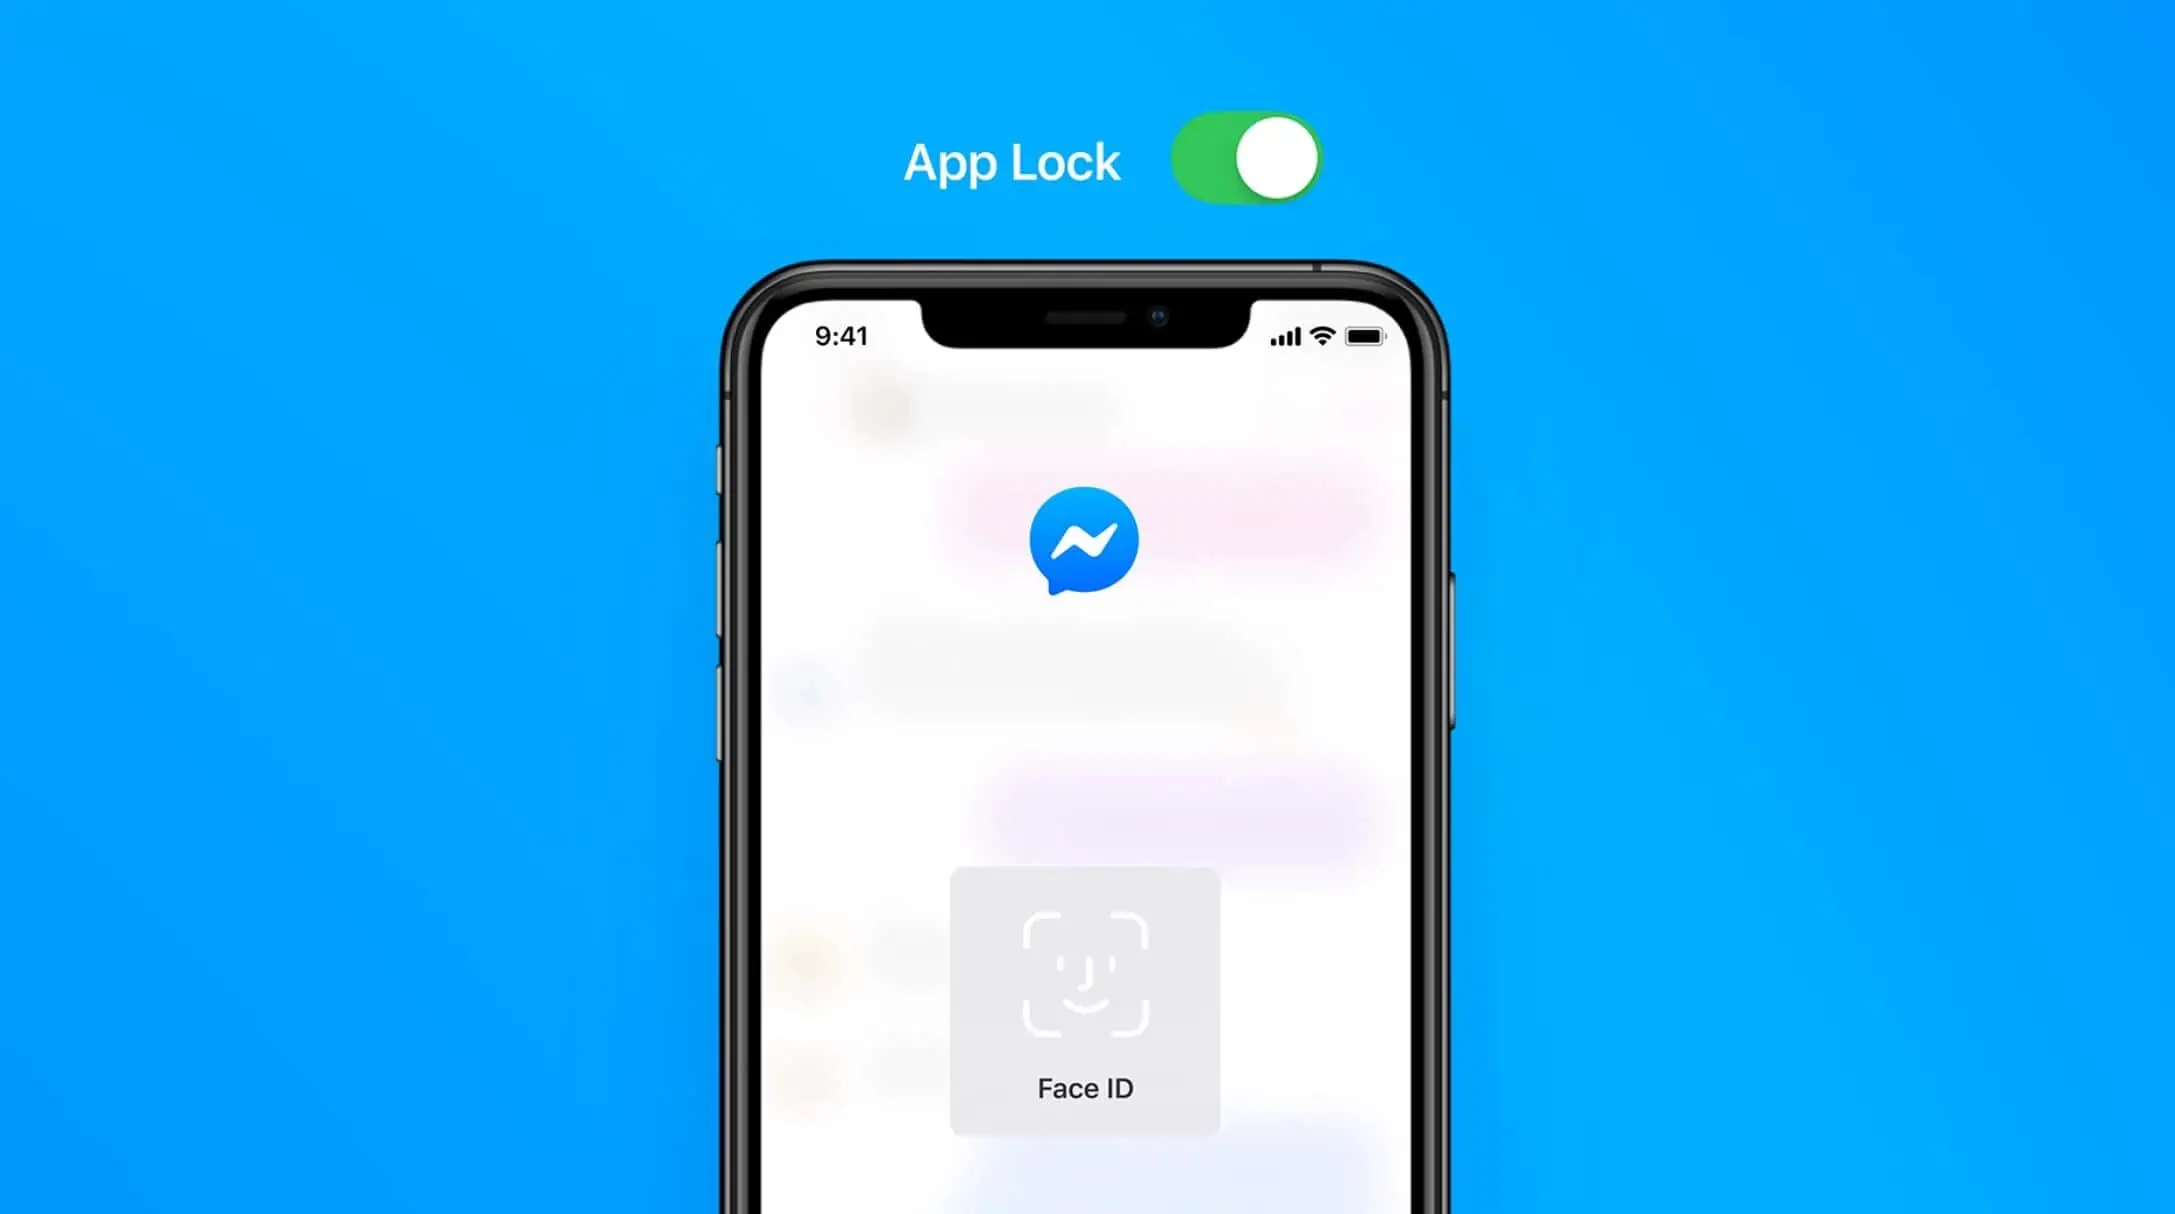 Messenger app